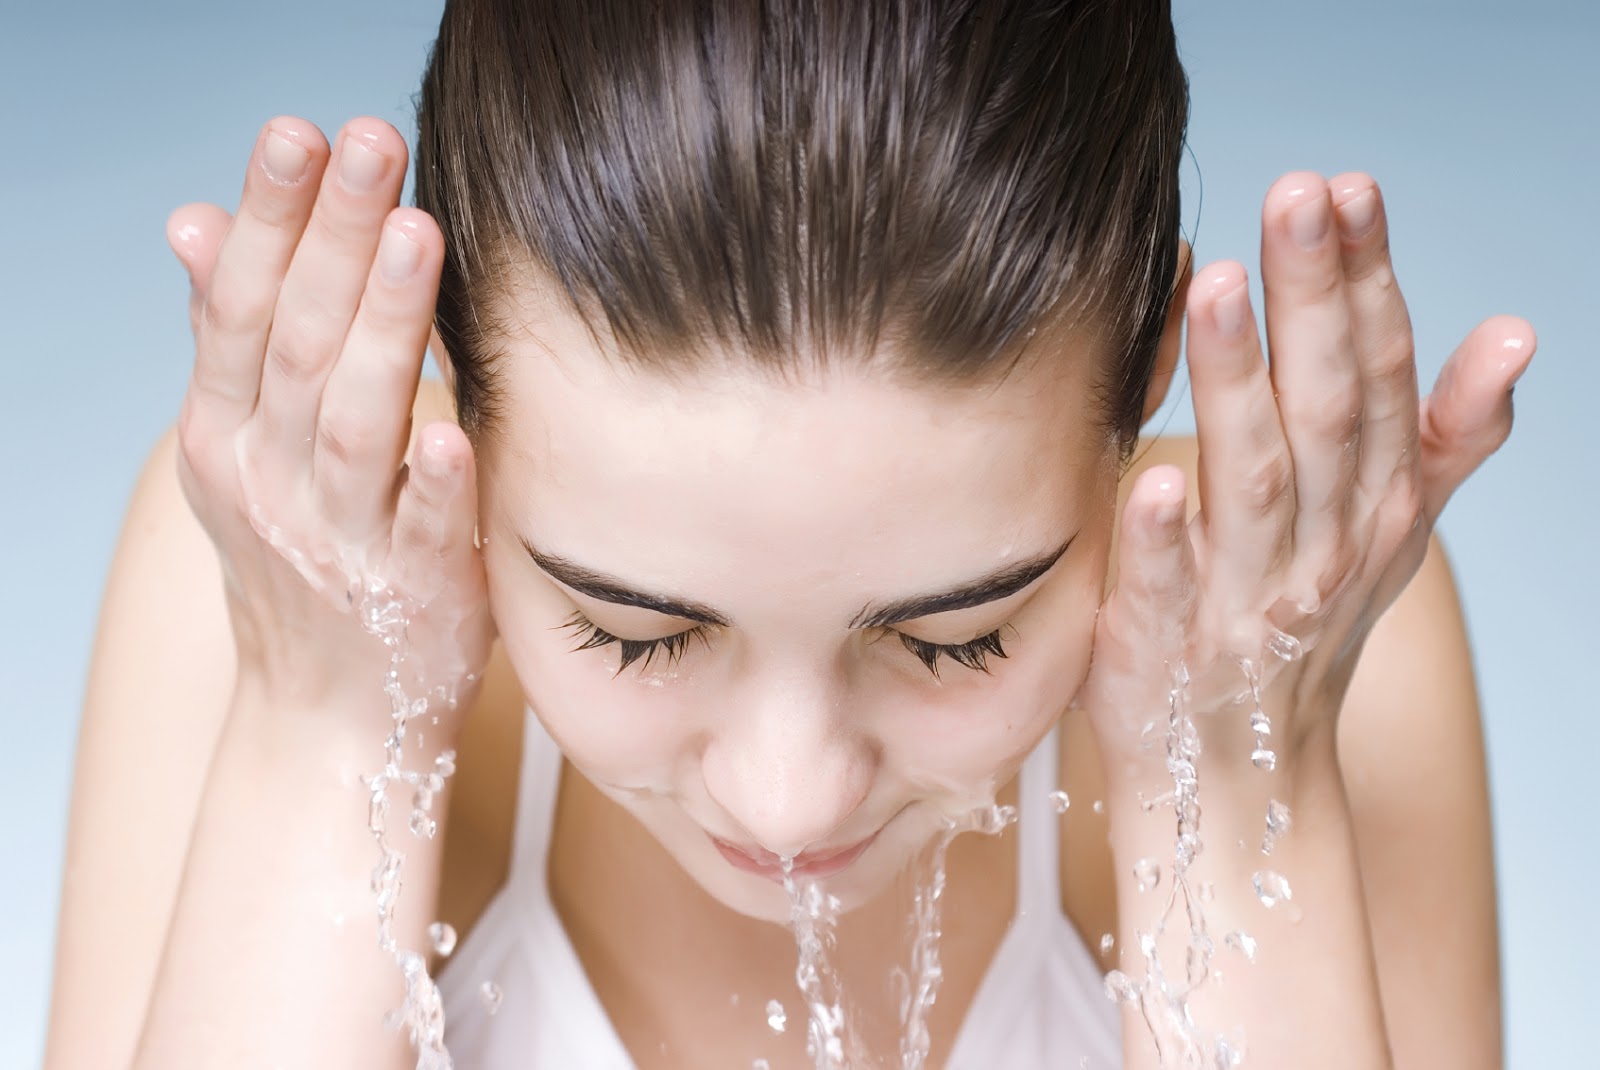 Vệ sinh da mặt bằng nước muối sinh lý giúp làm sạch da